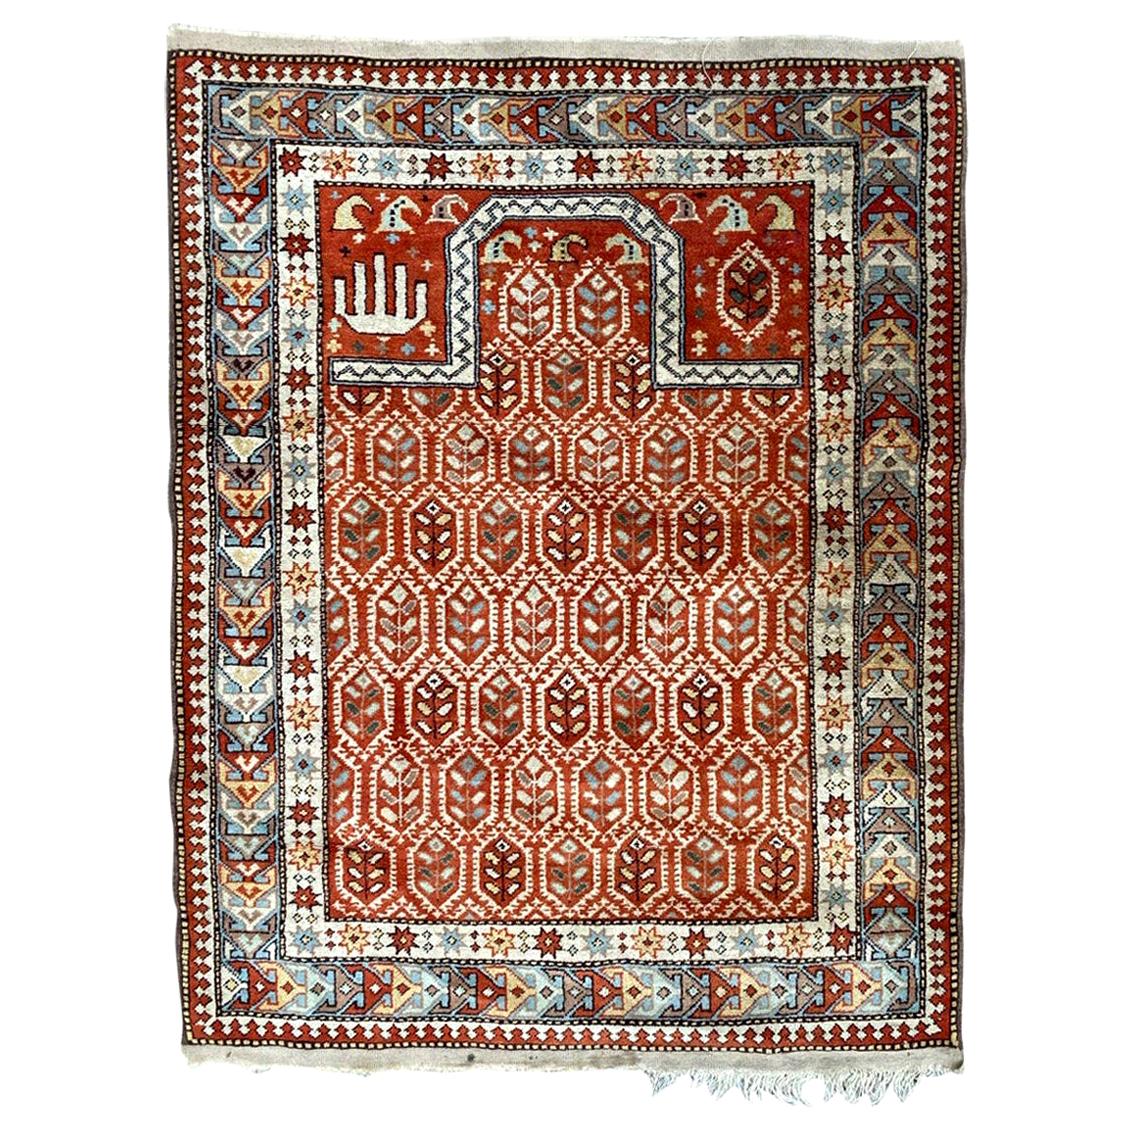 Bobyrugs schöner türkischer Gebetsteppich im Vintage-Stil